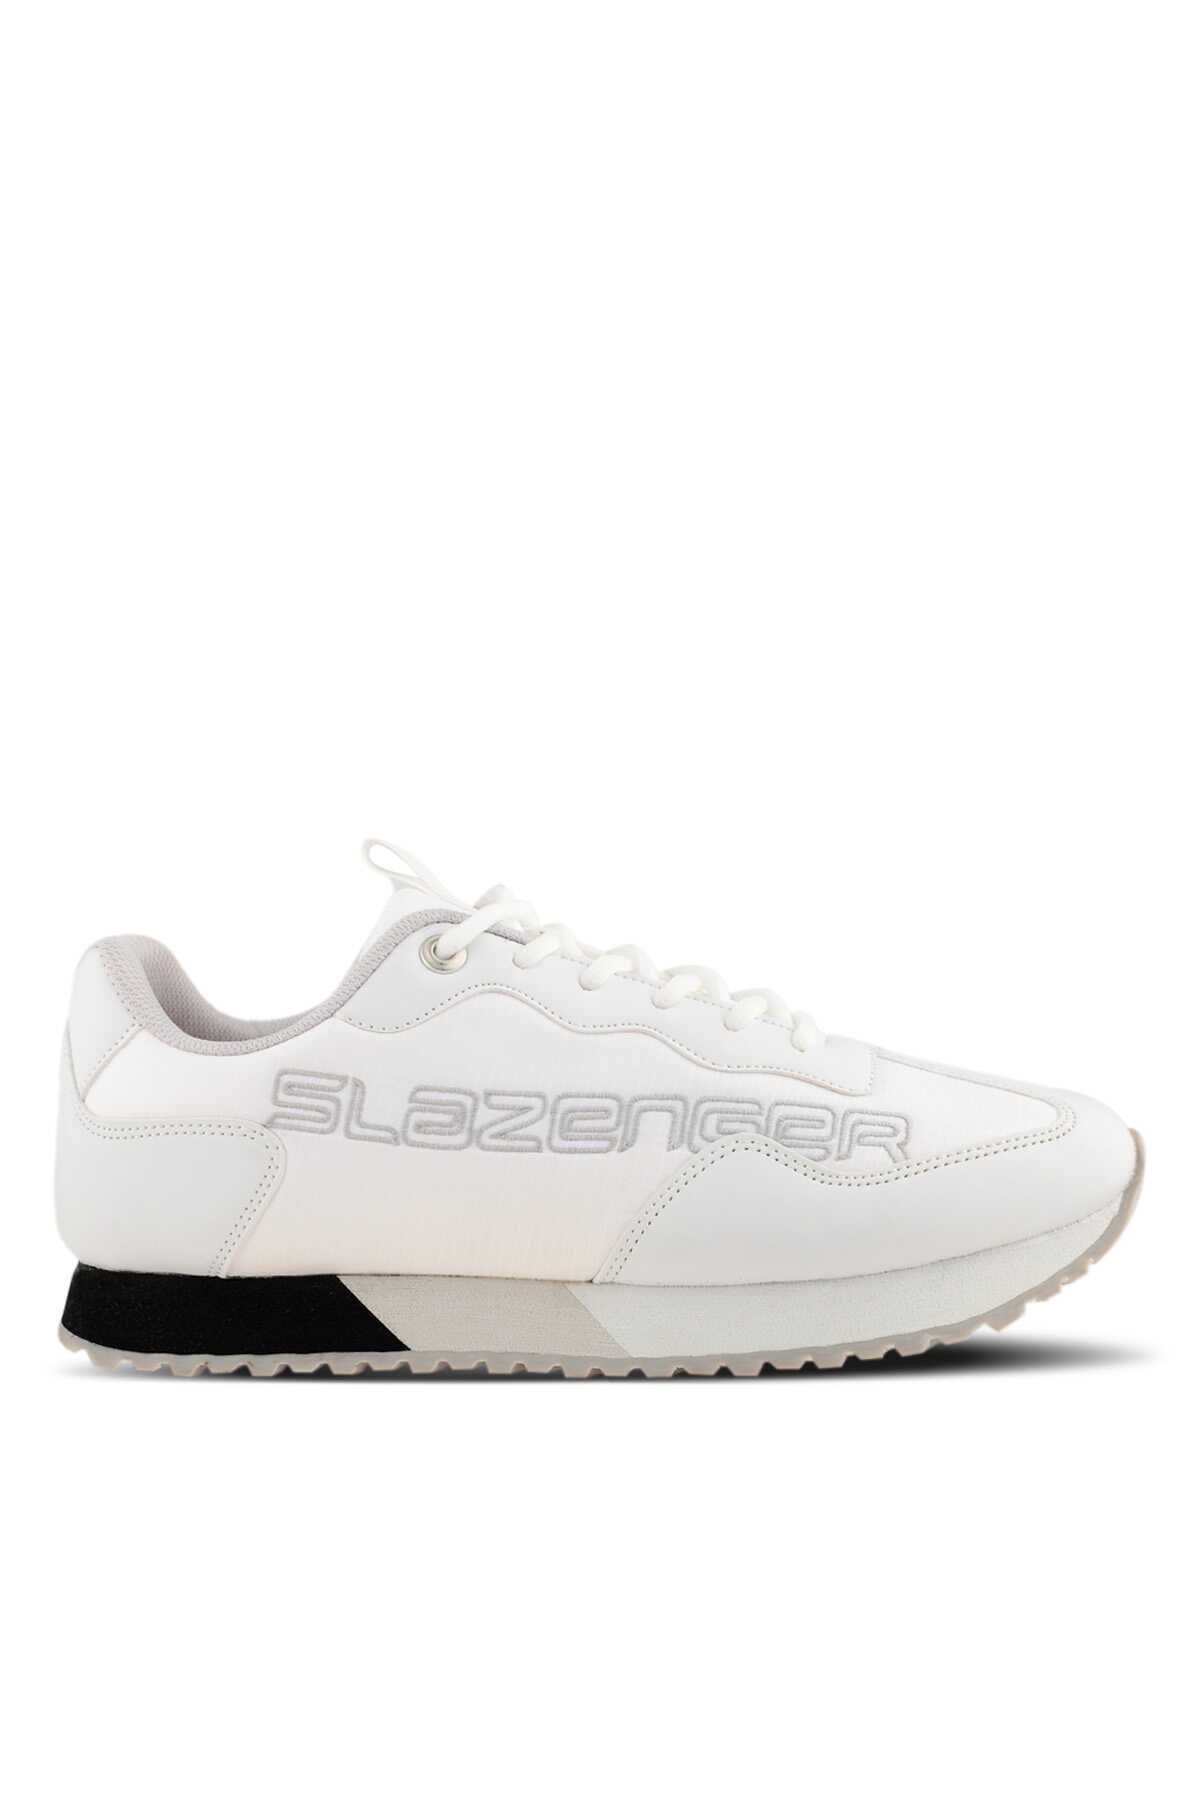 Slazenger - Slazenger BOBOS Sneaker Erkek Ayakkabı Beyaz